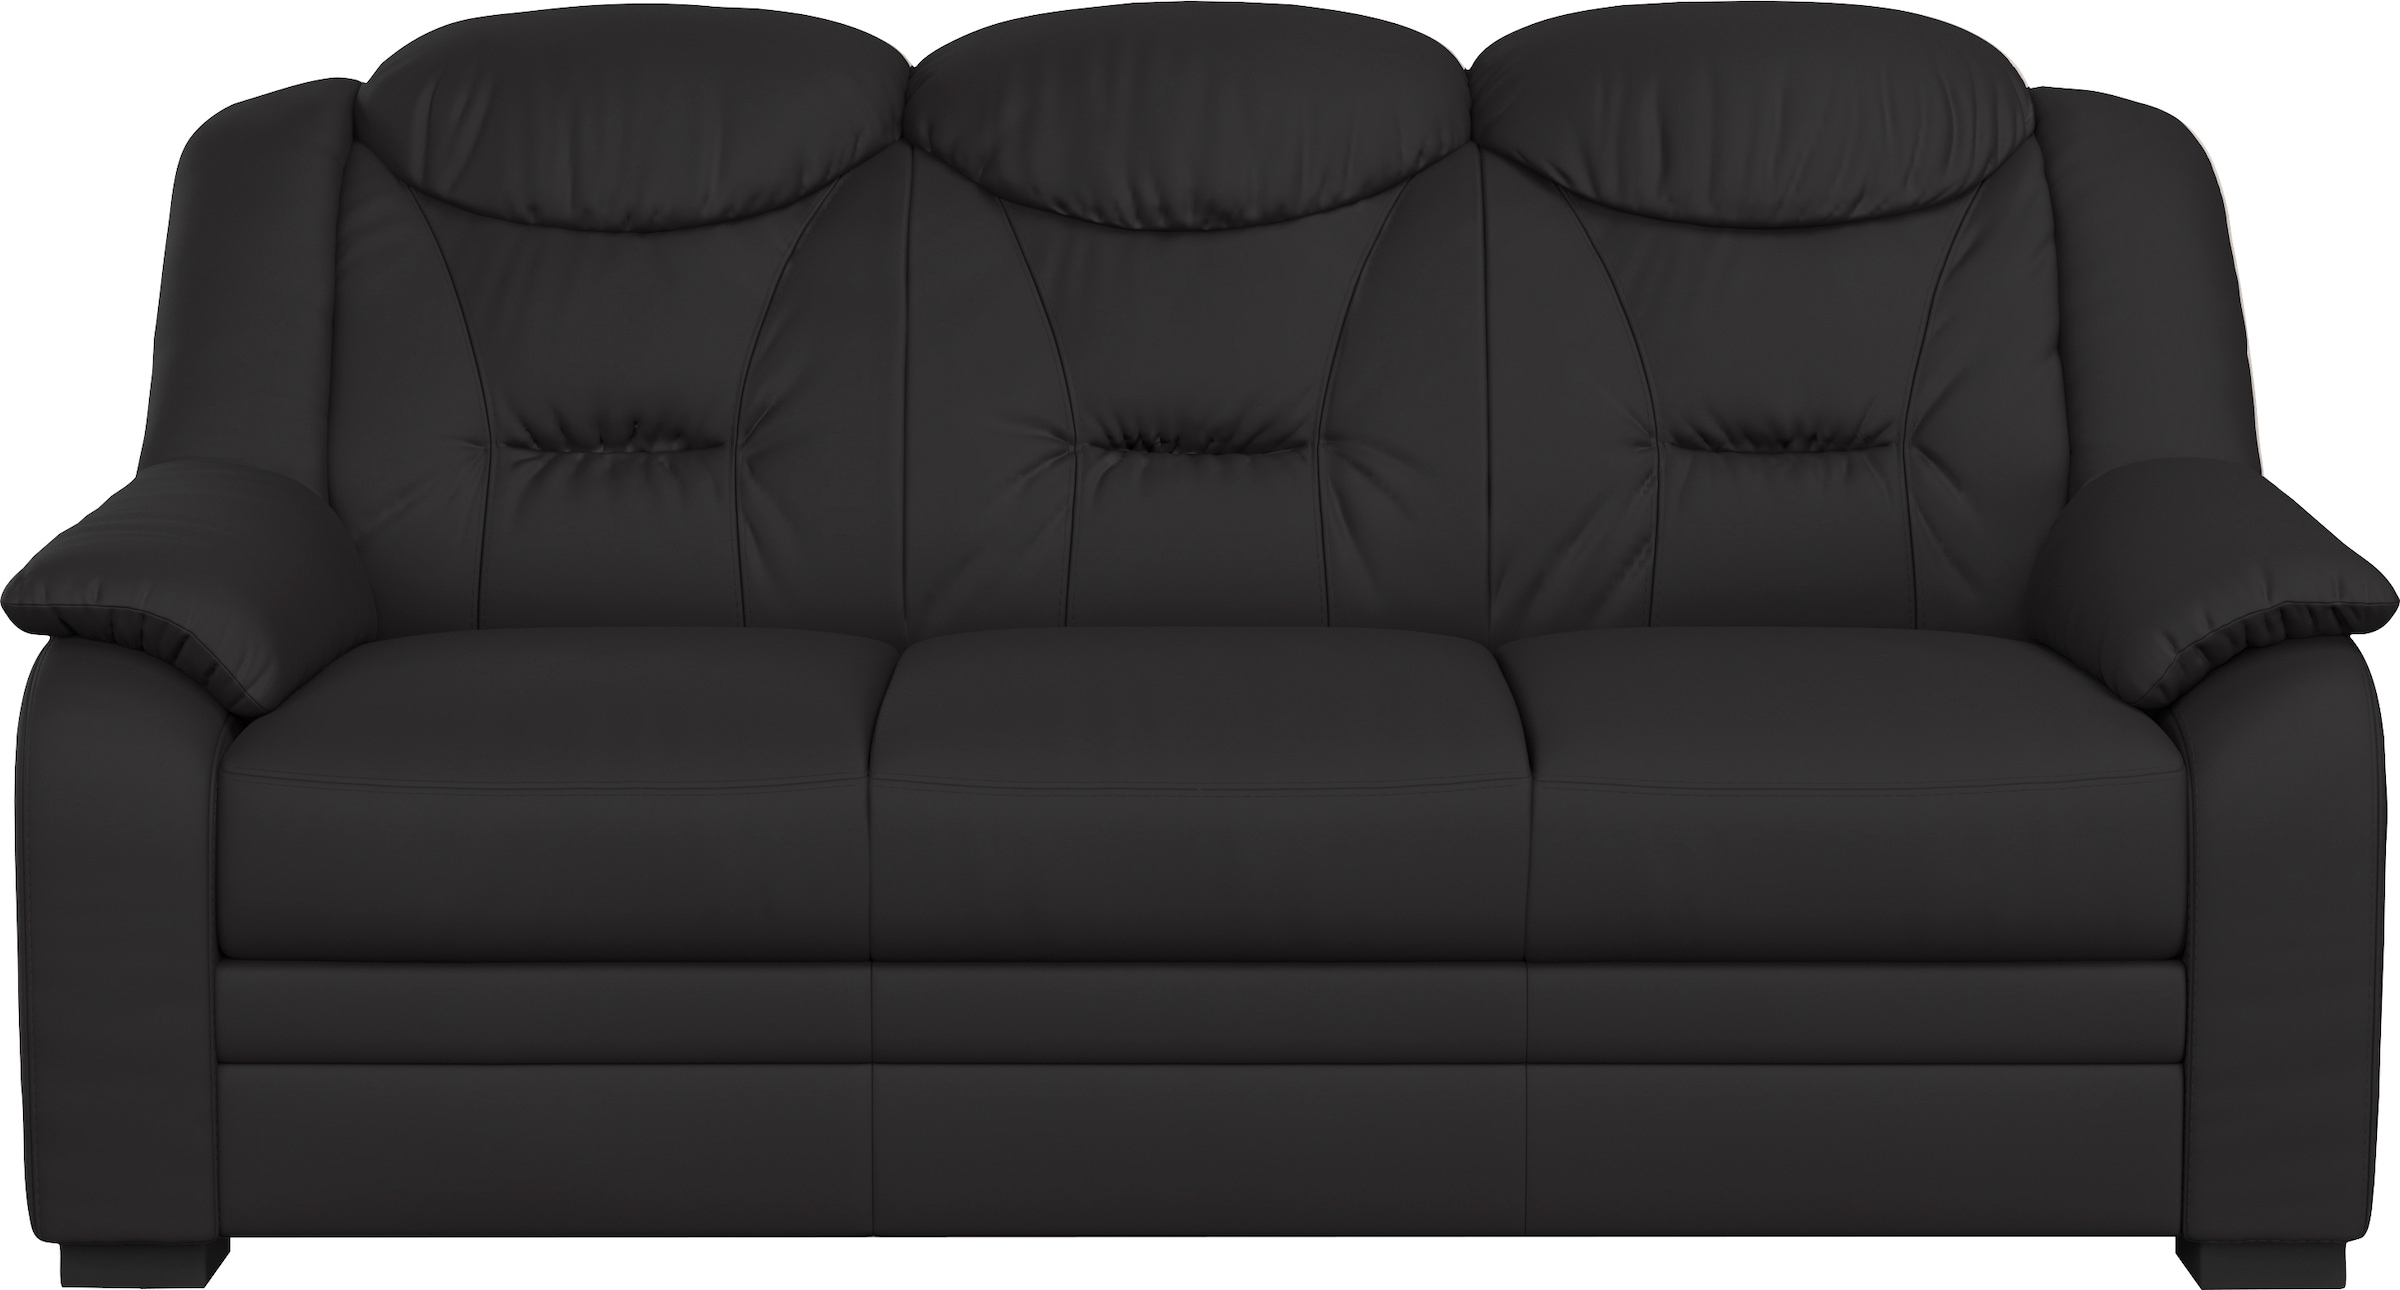 COTTA 3-Sitzer »Marcus«, Bequemer 3-Sitzer in klassischem Design mit hoher Rückenlehne